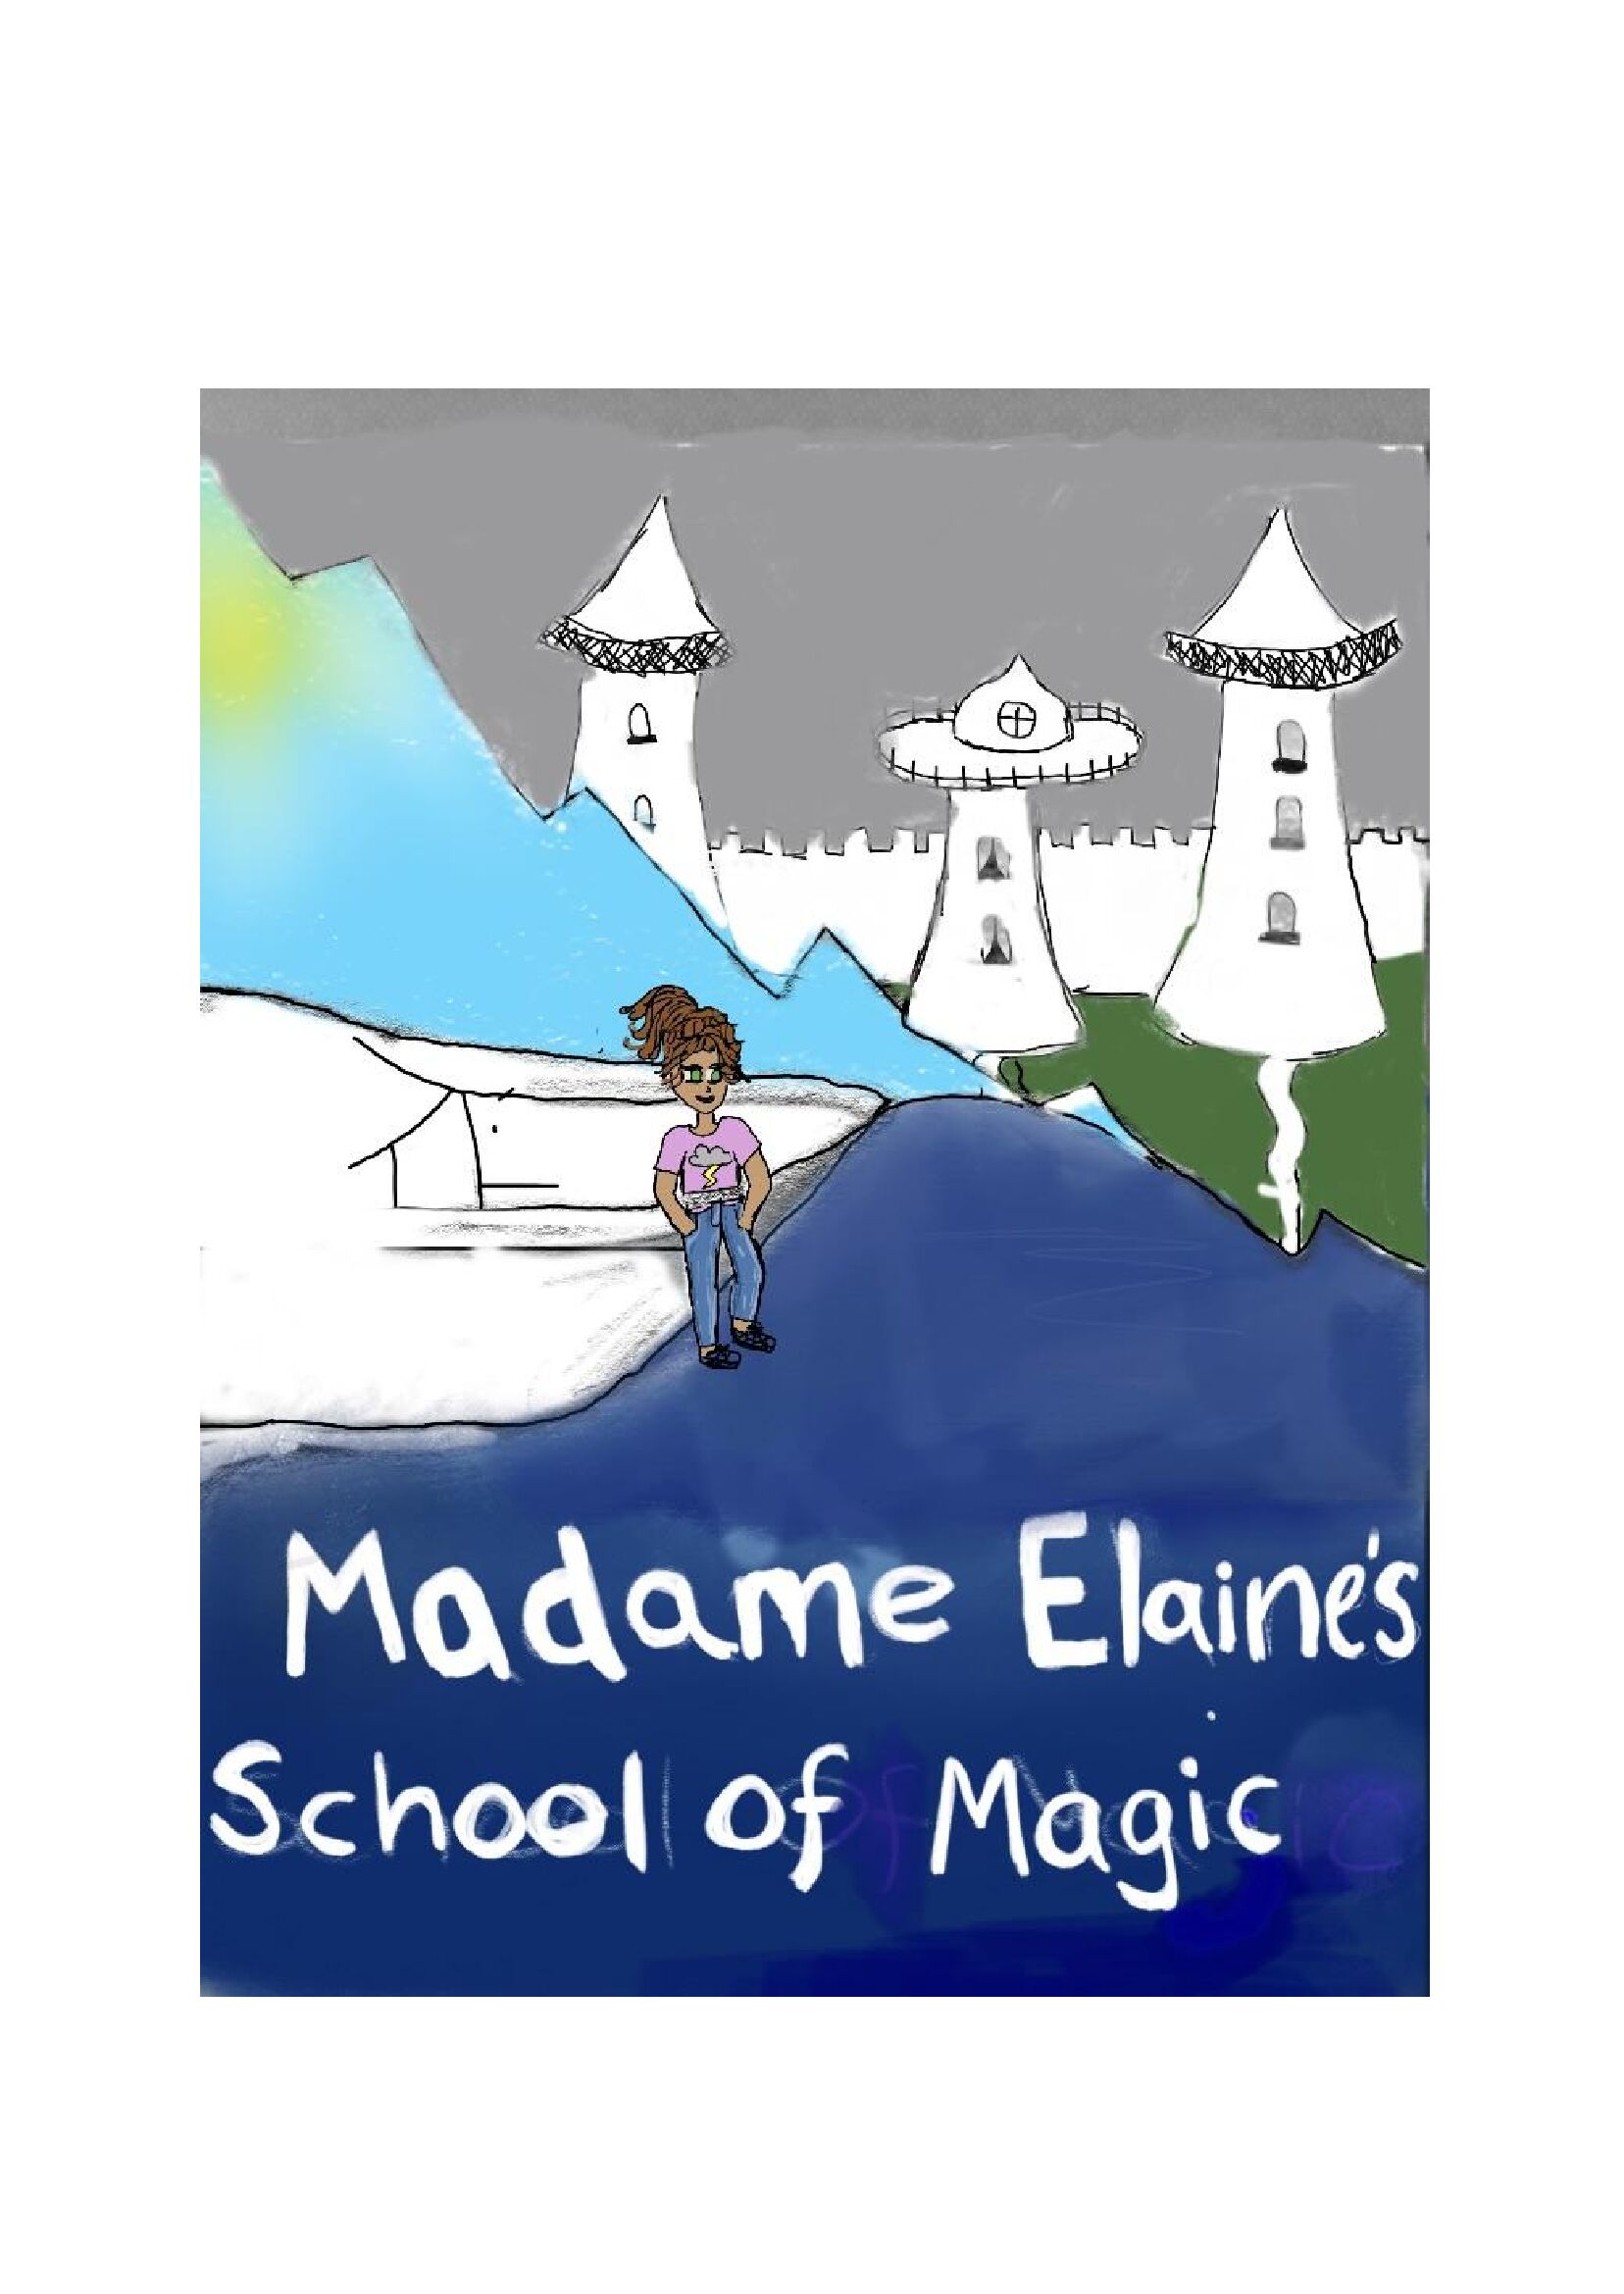 Madame Ellane's School of Magic